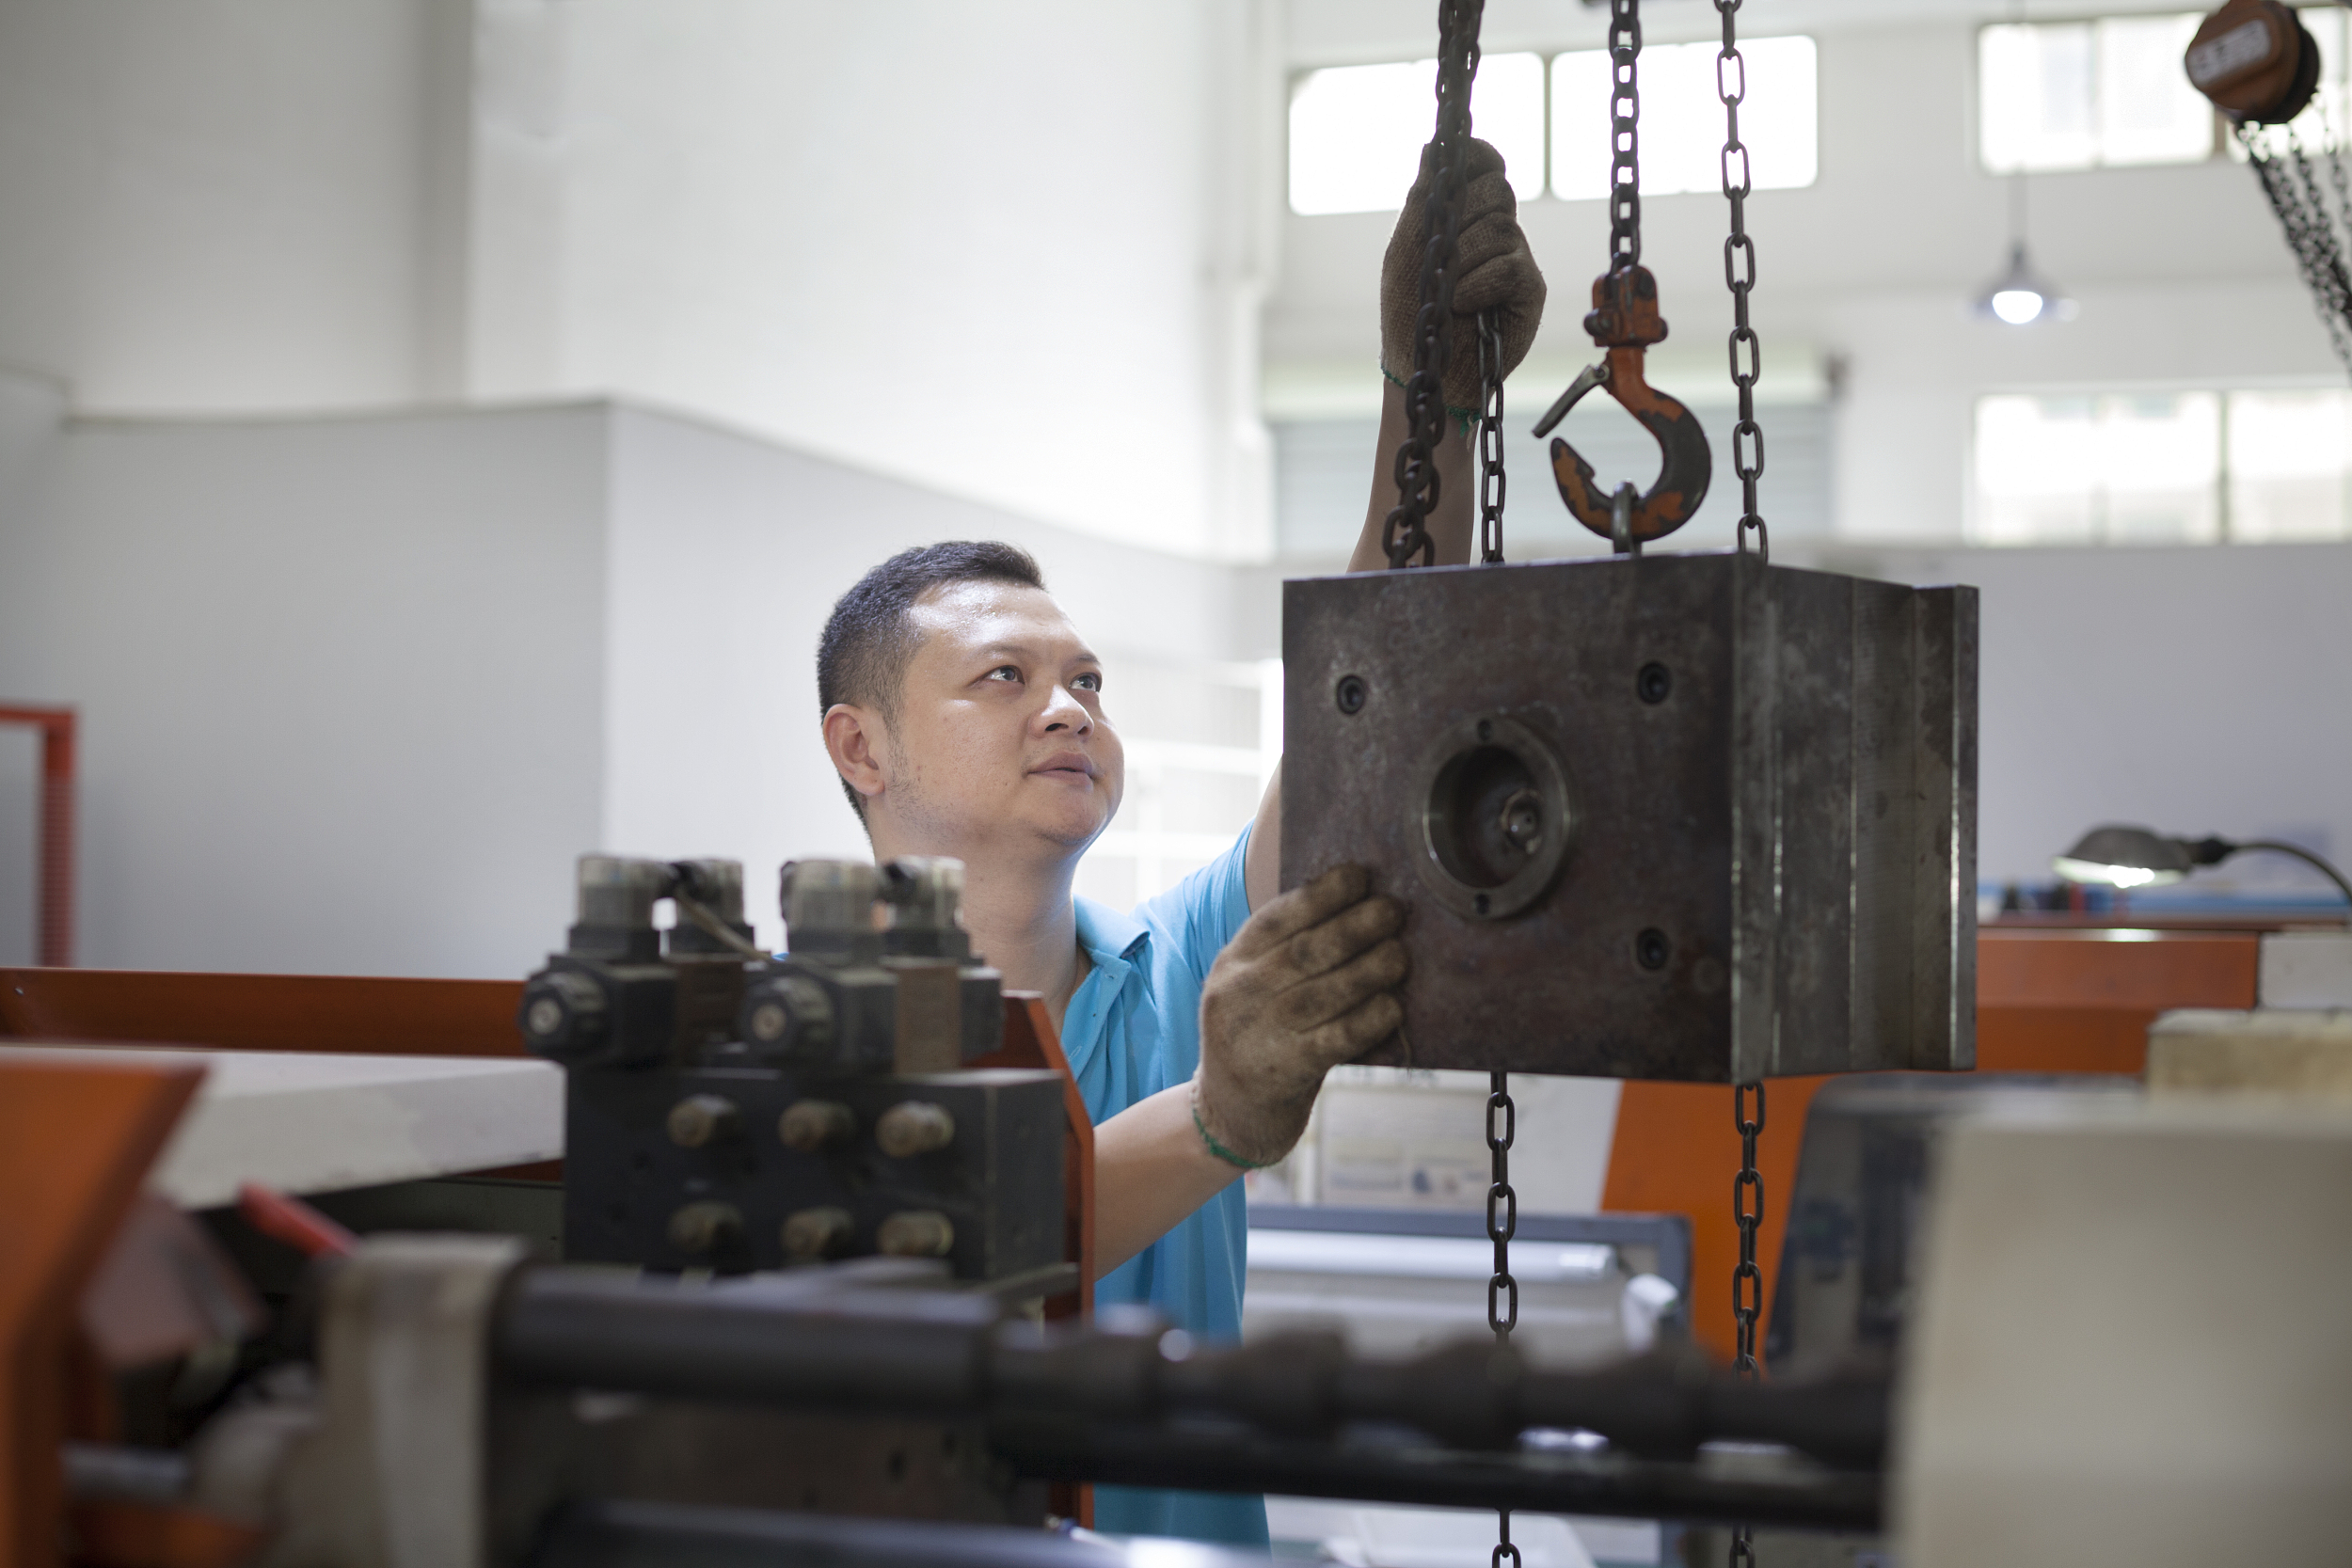 Technicien ajustant un équipement lourd dans une usine de fabrication en Chine